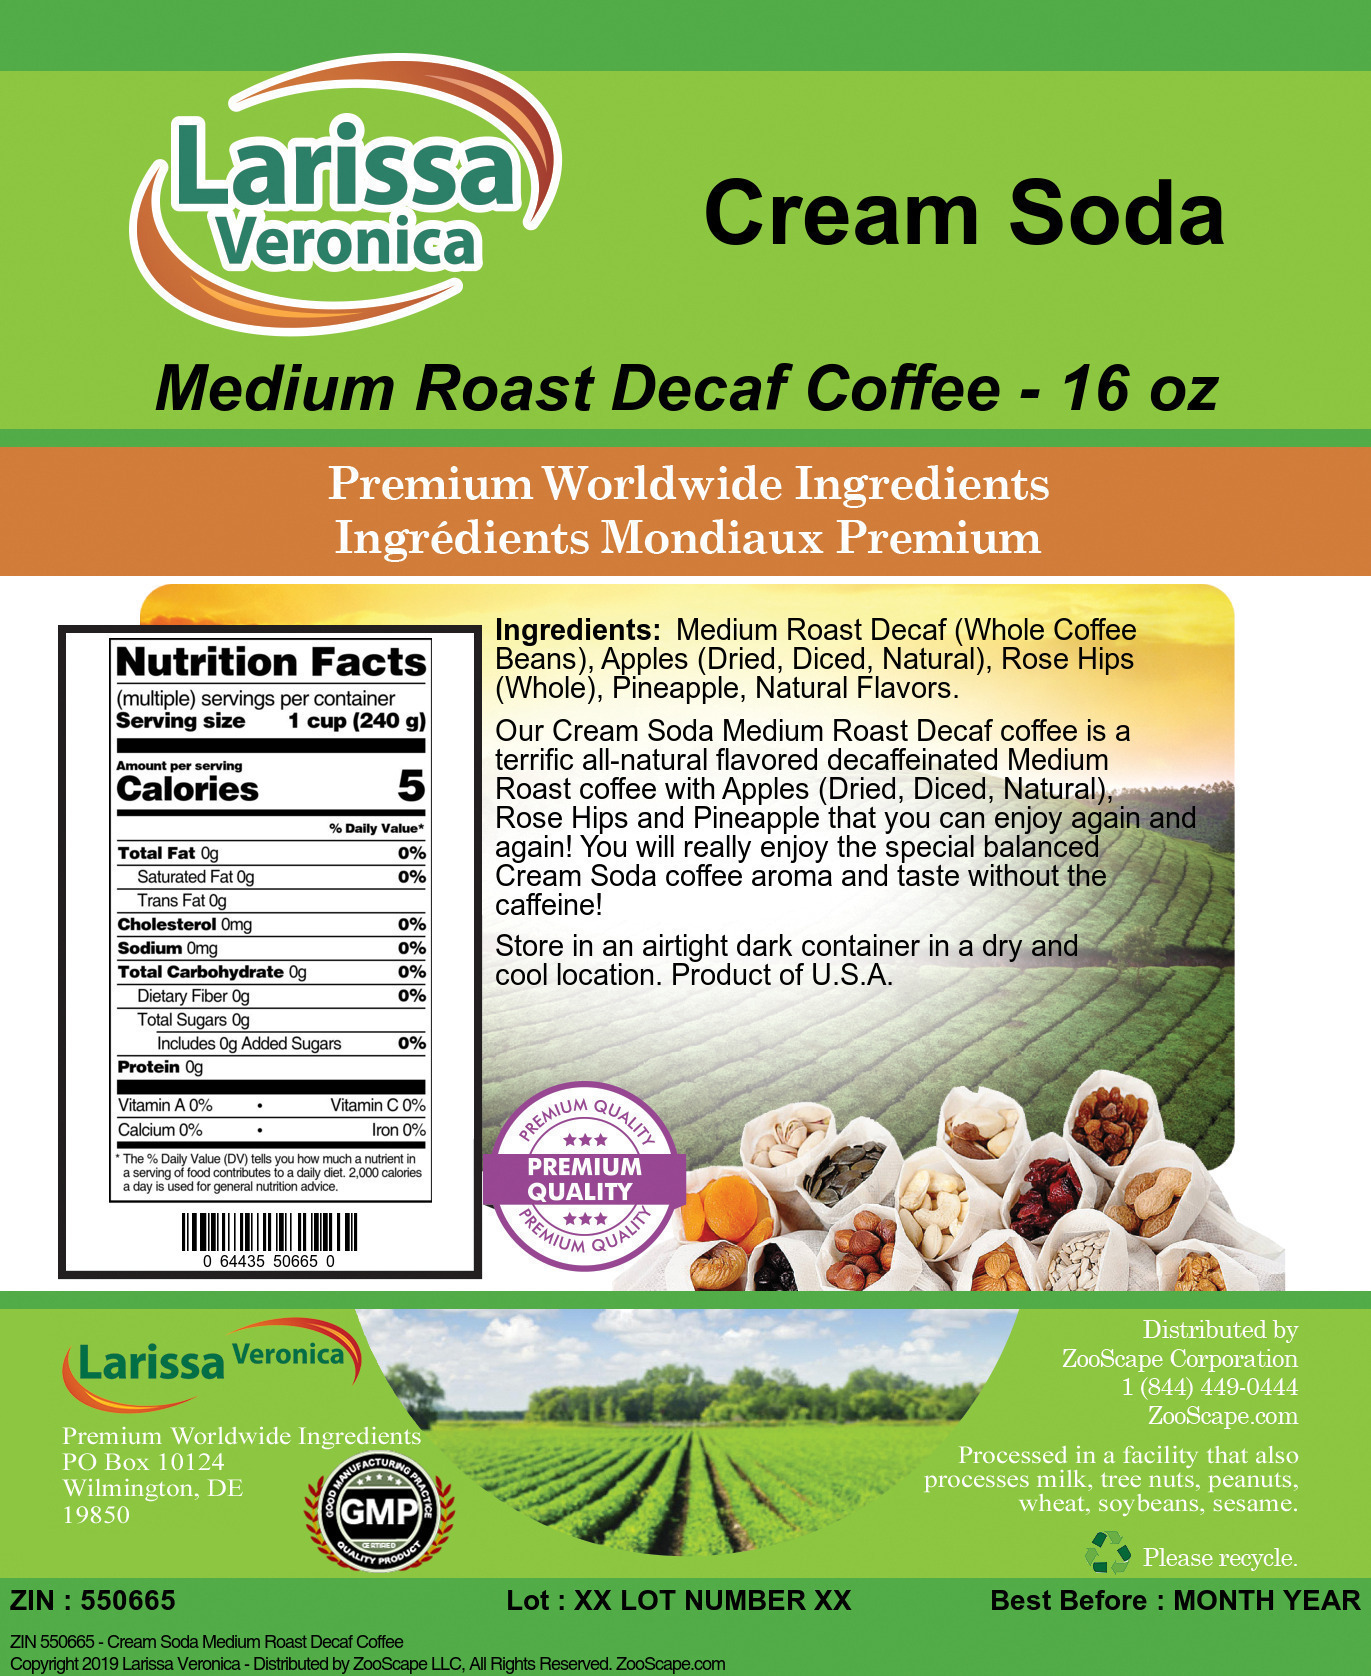 Cream Soda Medium Roast Decaf Coffee - Label